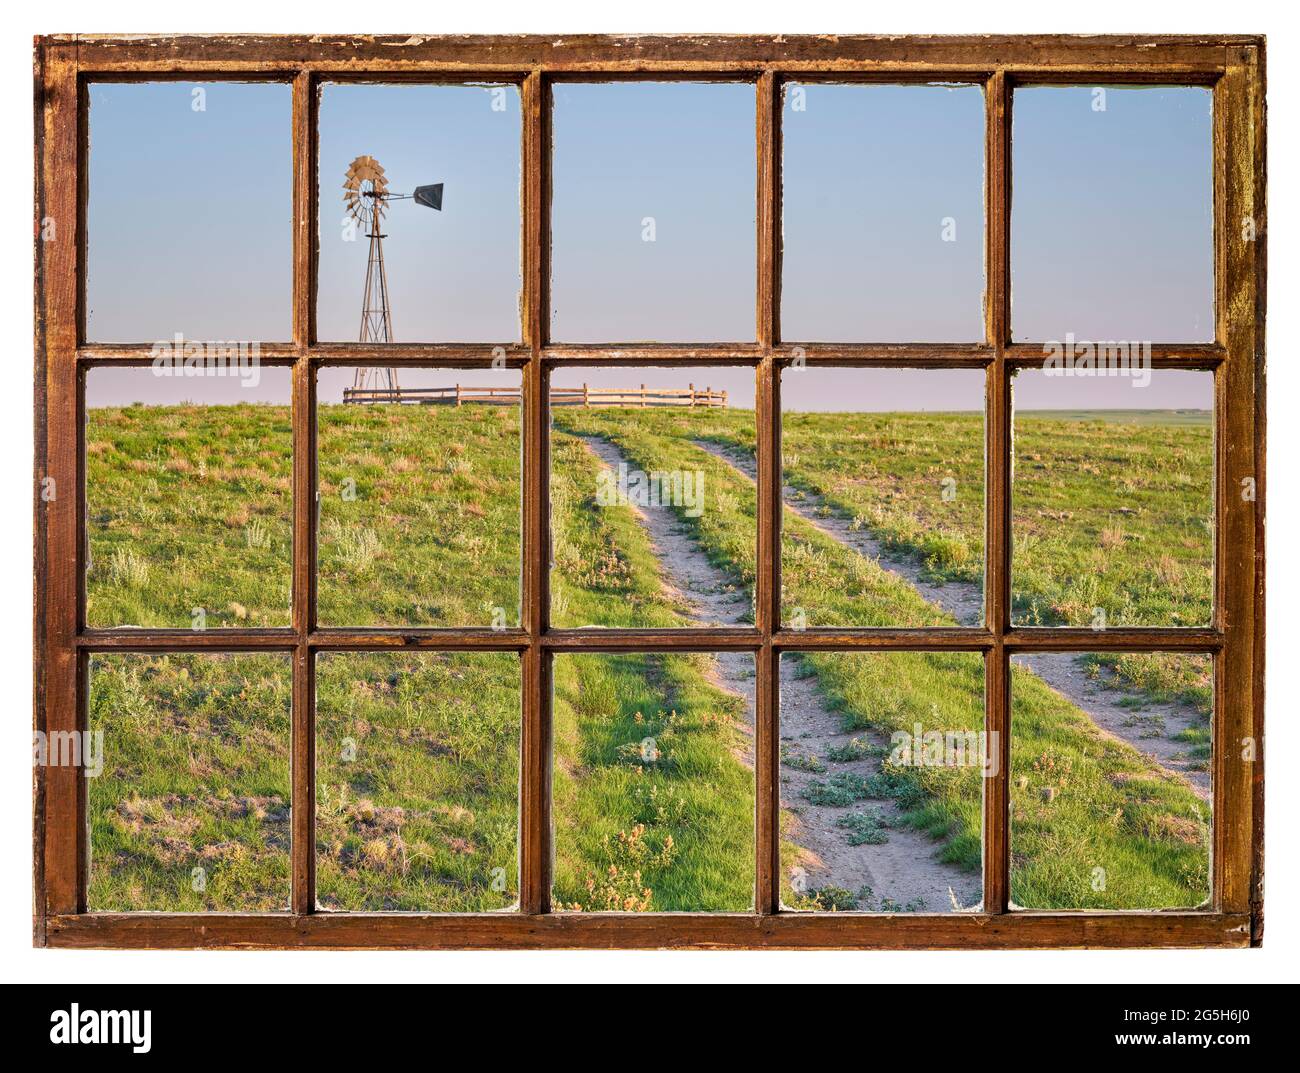 route de terre dans une prairie verte menant à un moulin à vent avec une pompe à eau dans une prairie courte vue d'une fenêtre à guillotine vintage Banque D'Images